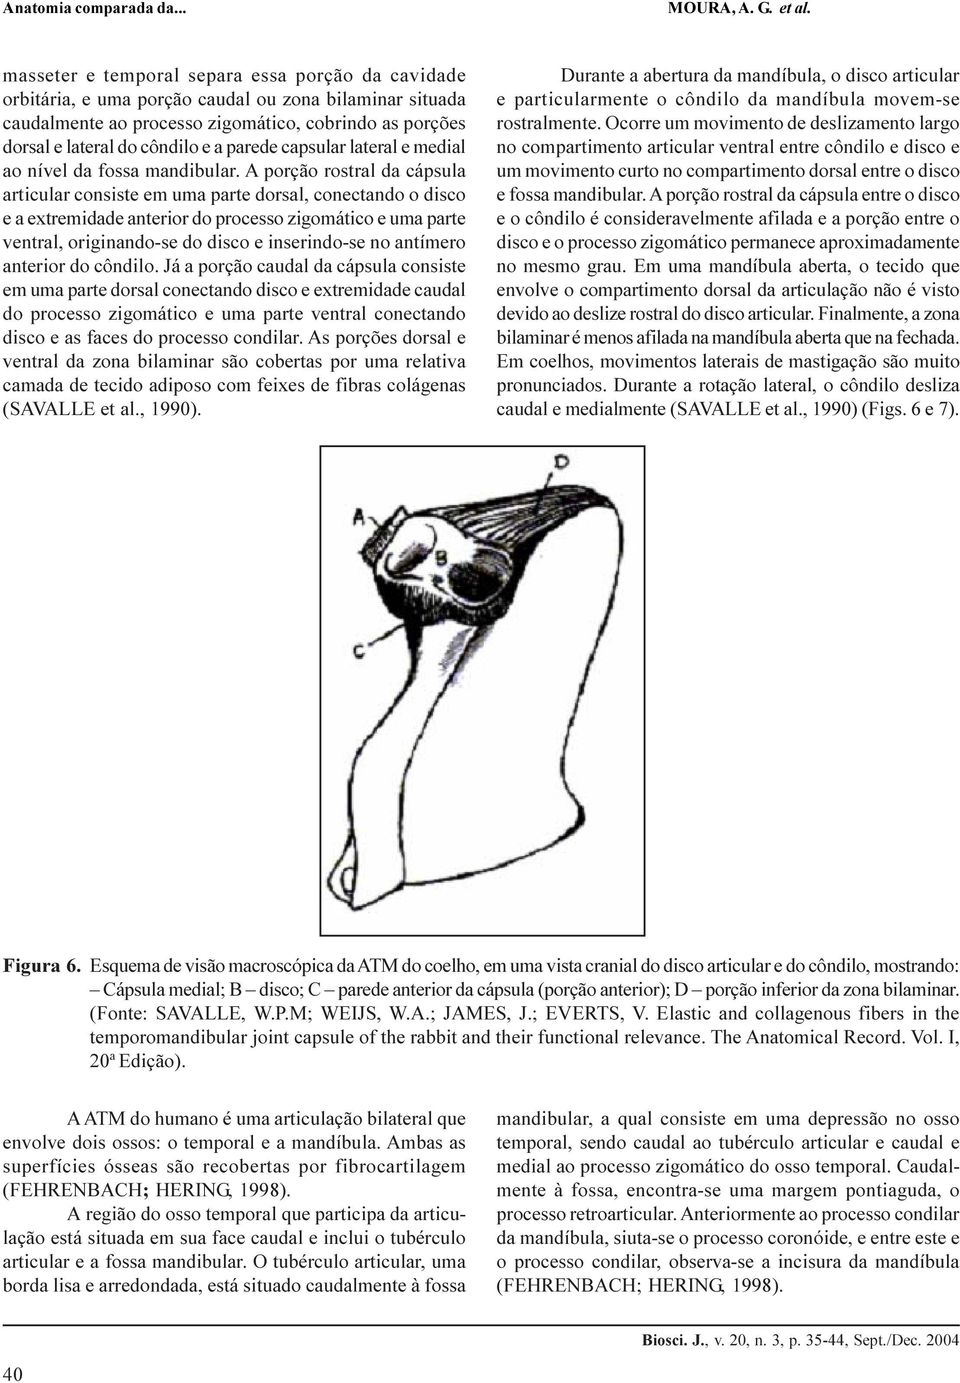 A porção rostral da cápsula articular consiste em uma parte dorsal, conectando o disco e a extremidade anterior do processo zigomático e uma parte ventral, originando-se do disco e inserindo-se no